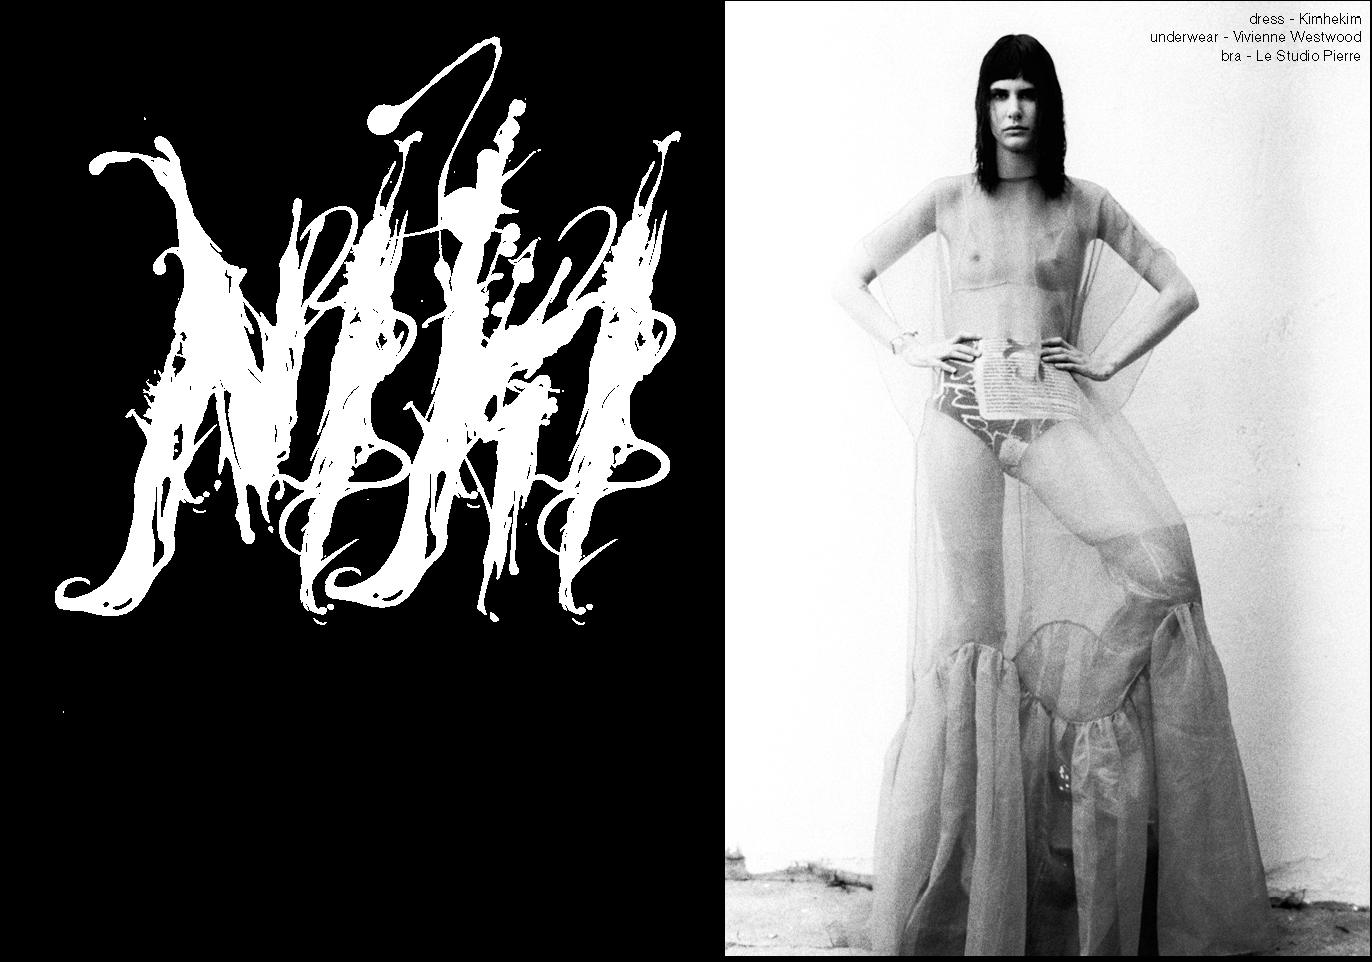 Bad to the Bone - Niki - Photo - Herve Coutin & Style - Alejandra Perez